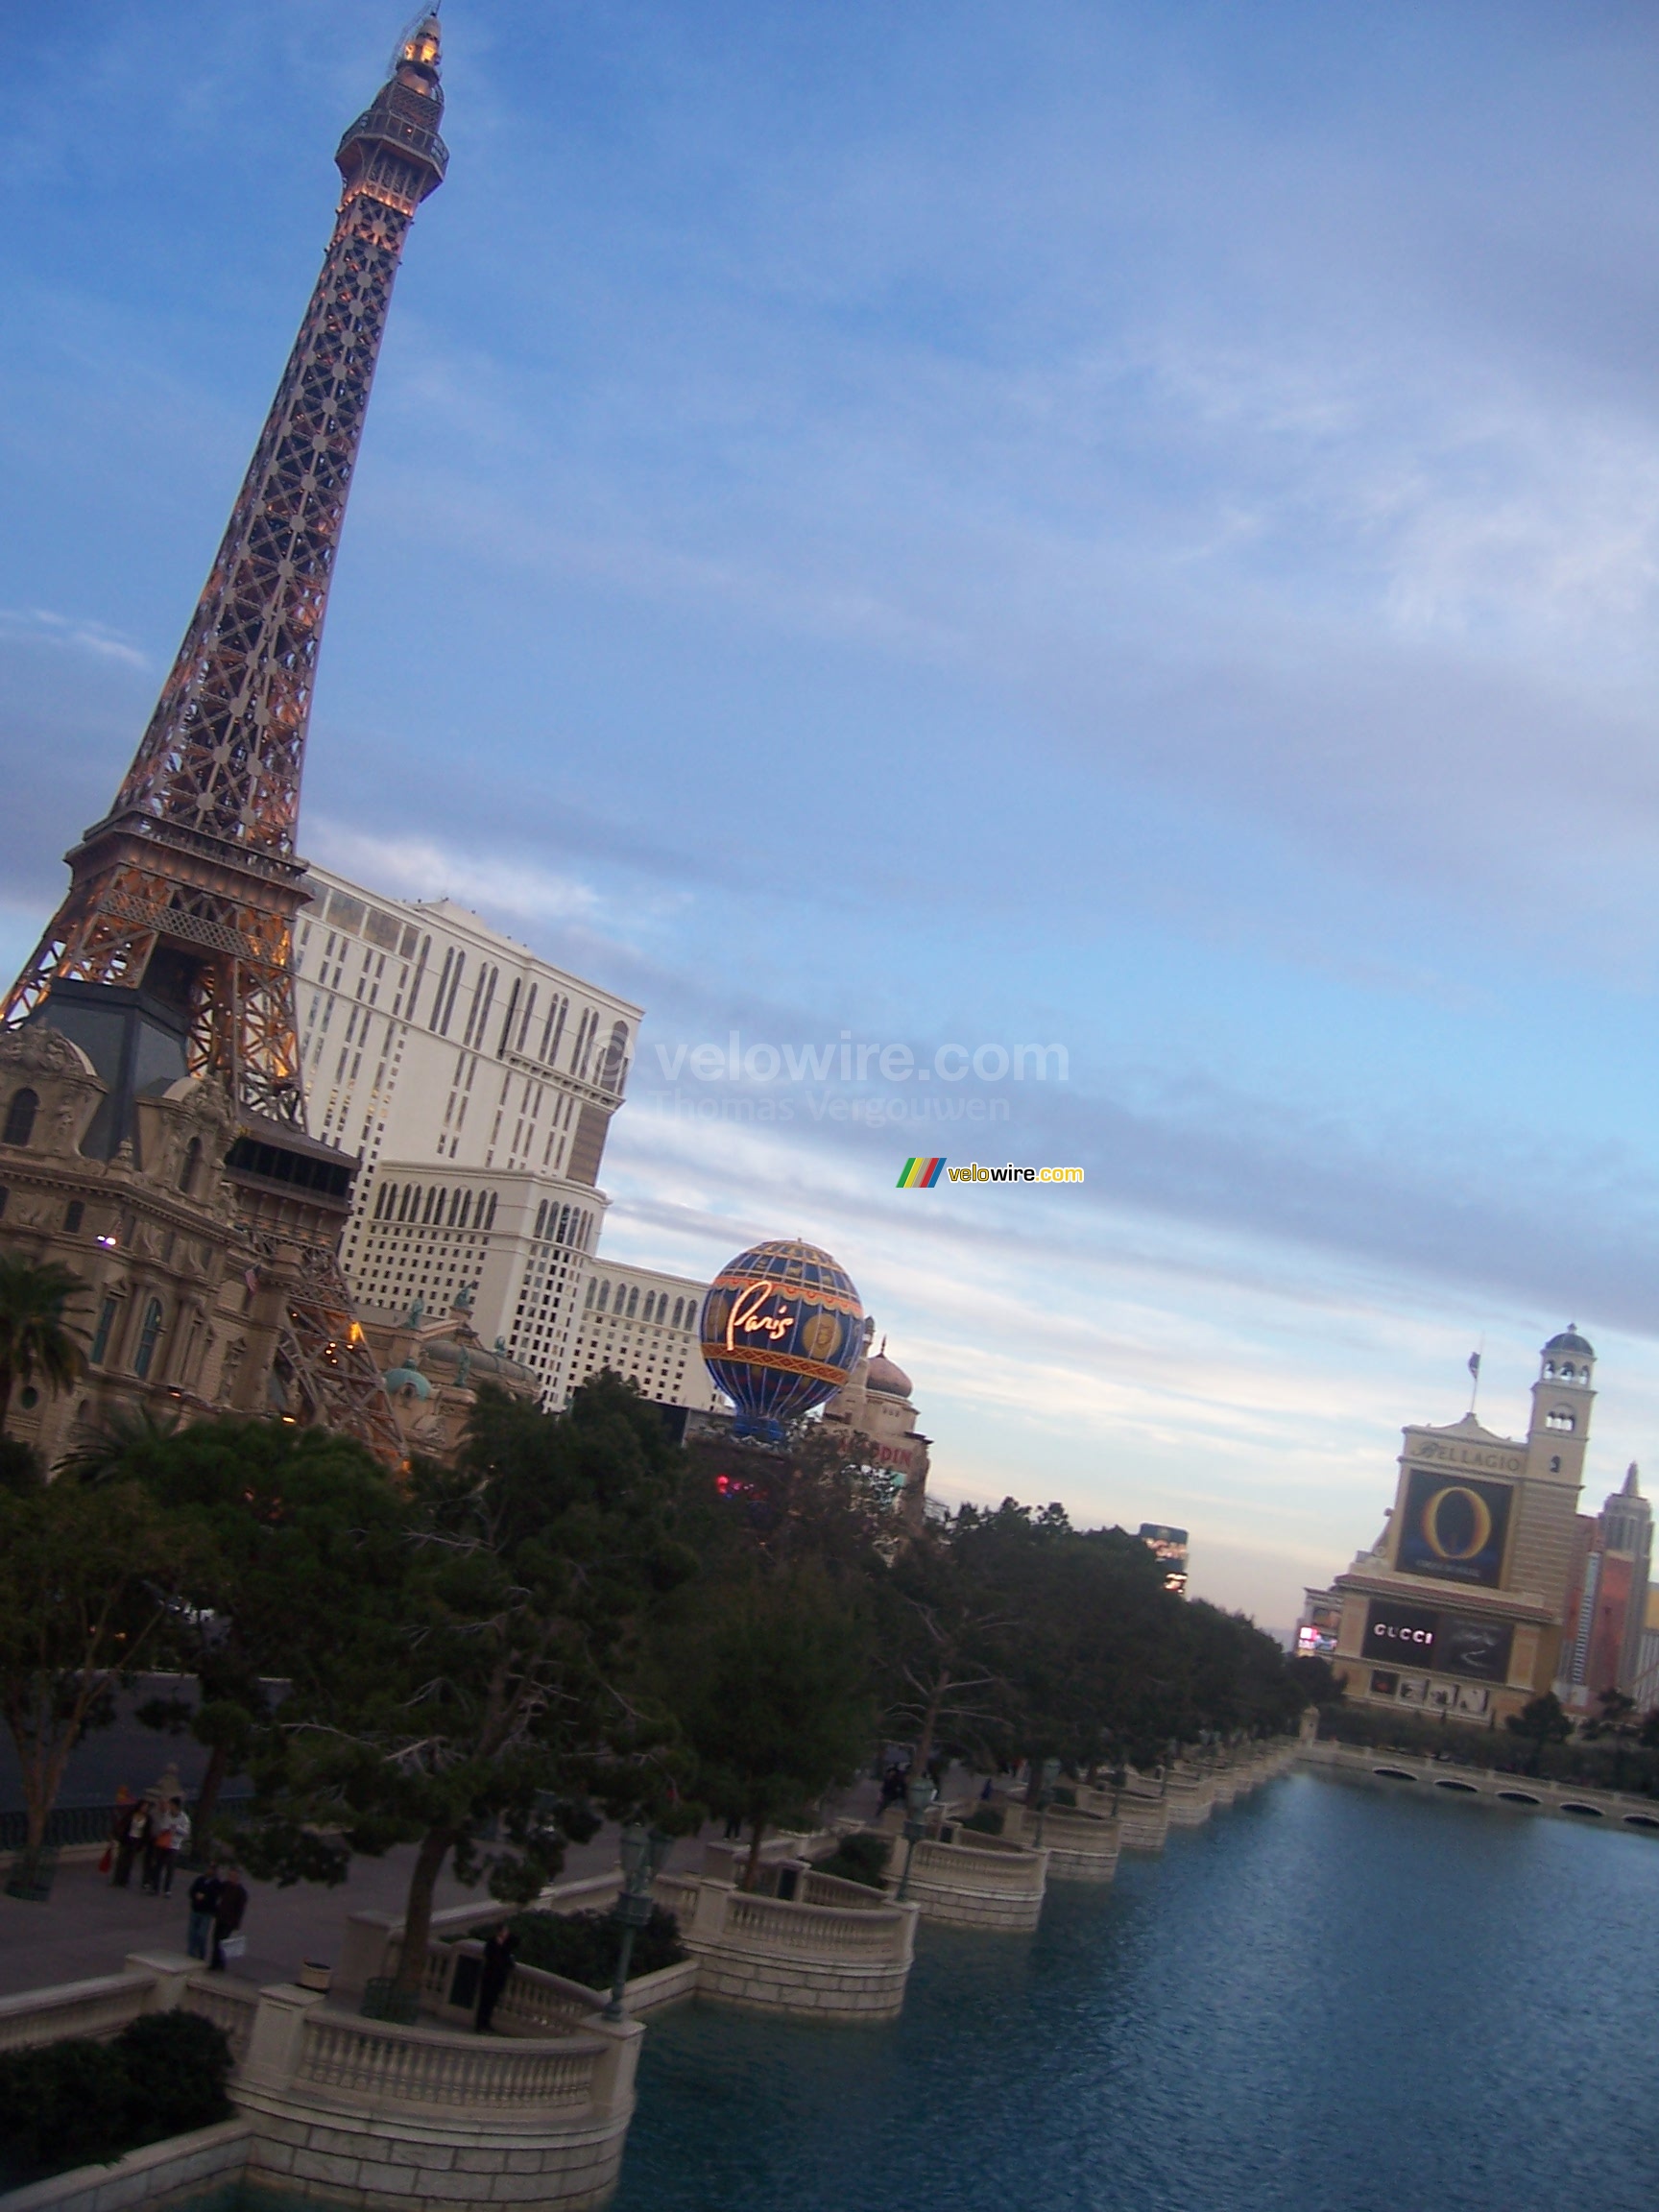 Links Paris met de Eiffeltoren, rechts de ingang van Bellagio